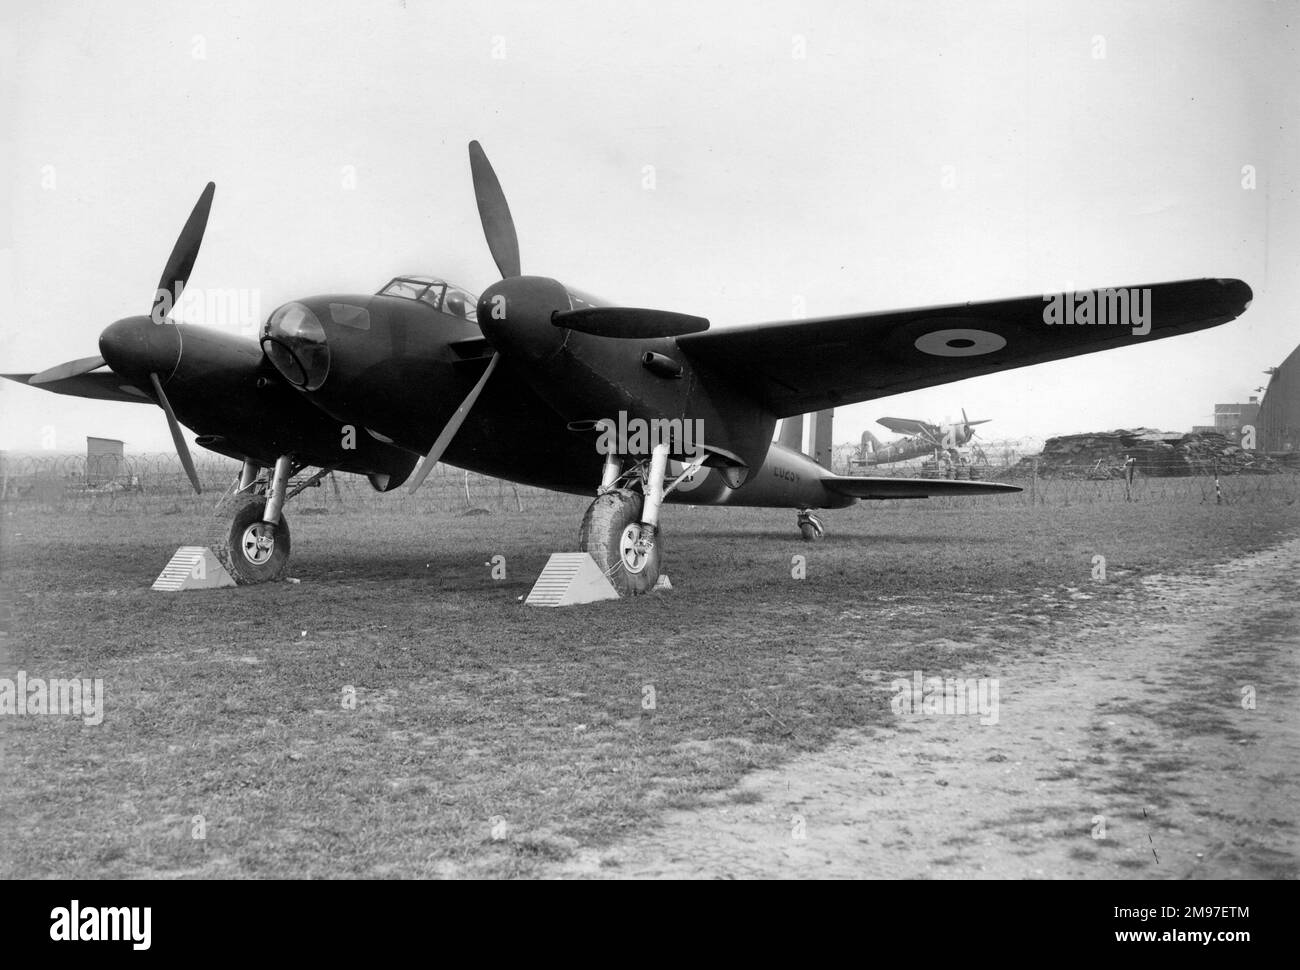 De Havilland DH 98 Mosquito -Voici la toute première de cette illustre ligne construite principalement de bois, le Mosquito s'est avéré facilement adaptable pour le bombardement, le combat ou la reconnaissance. Banque D'Images